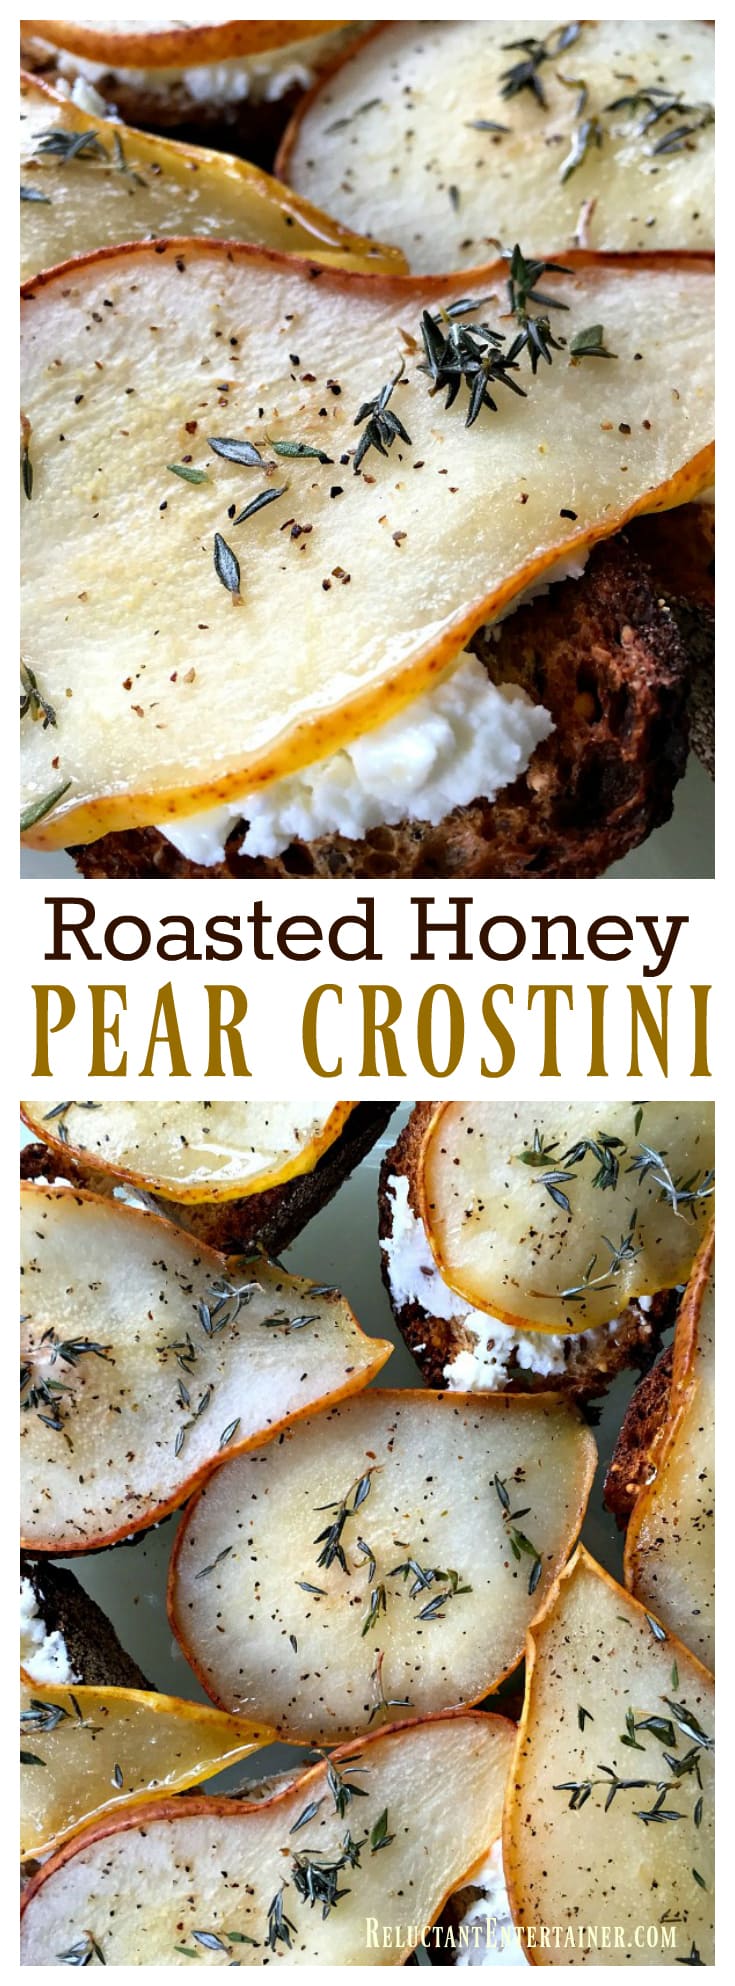 Roasted Honey Pear Crostini